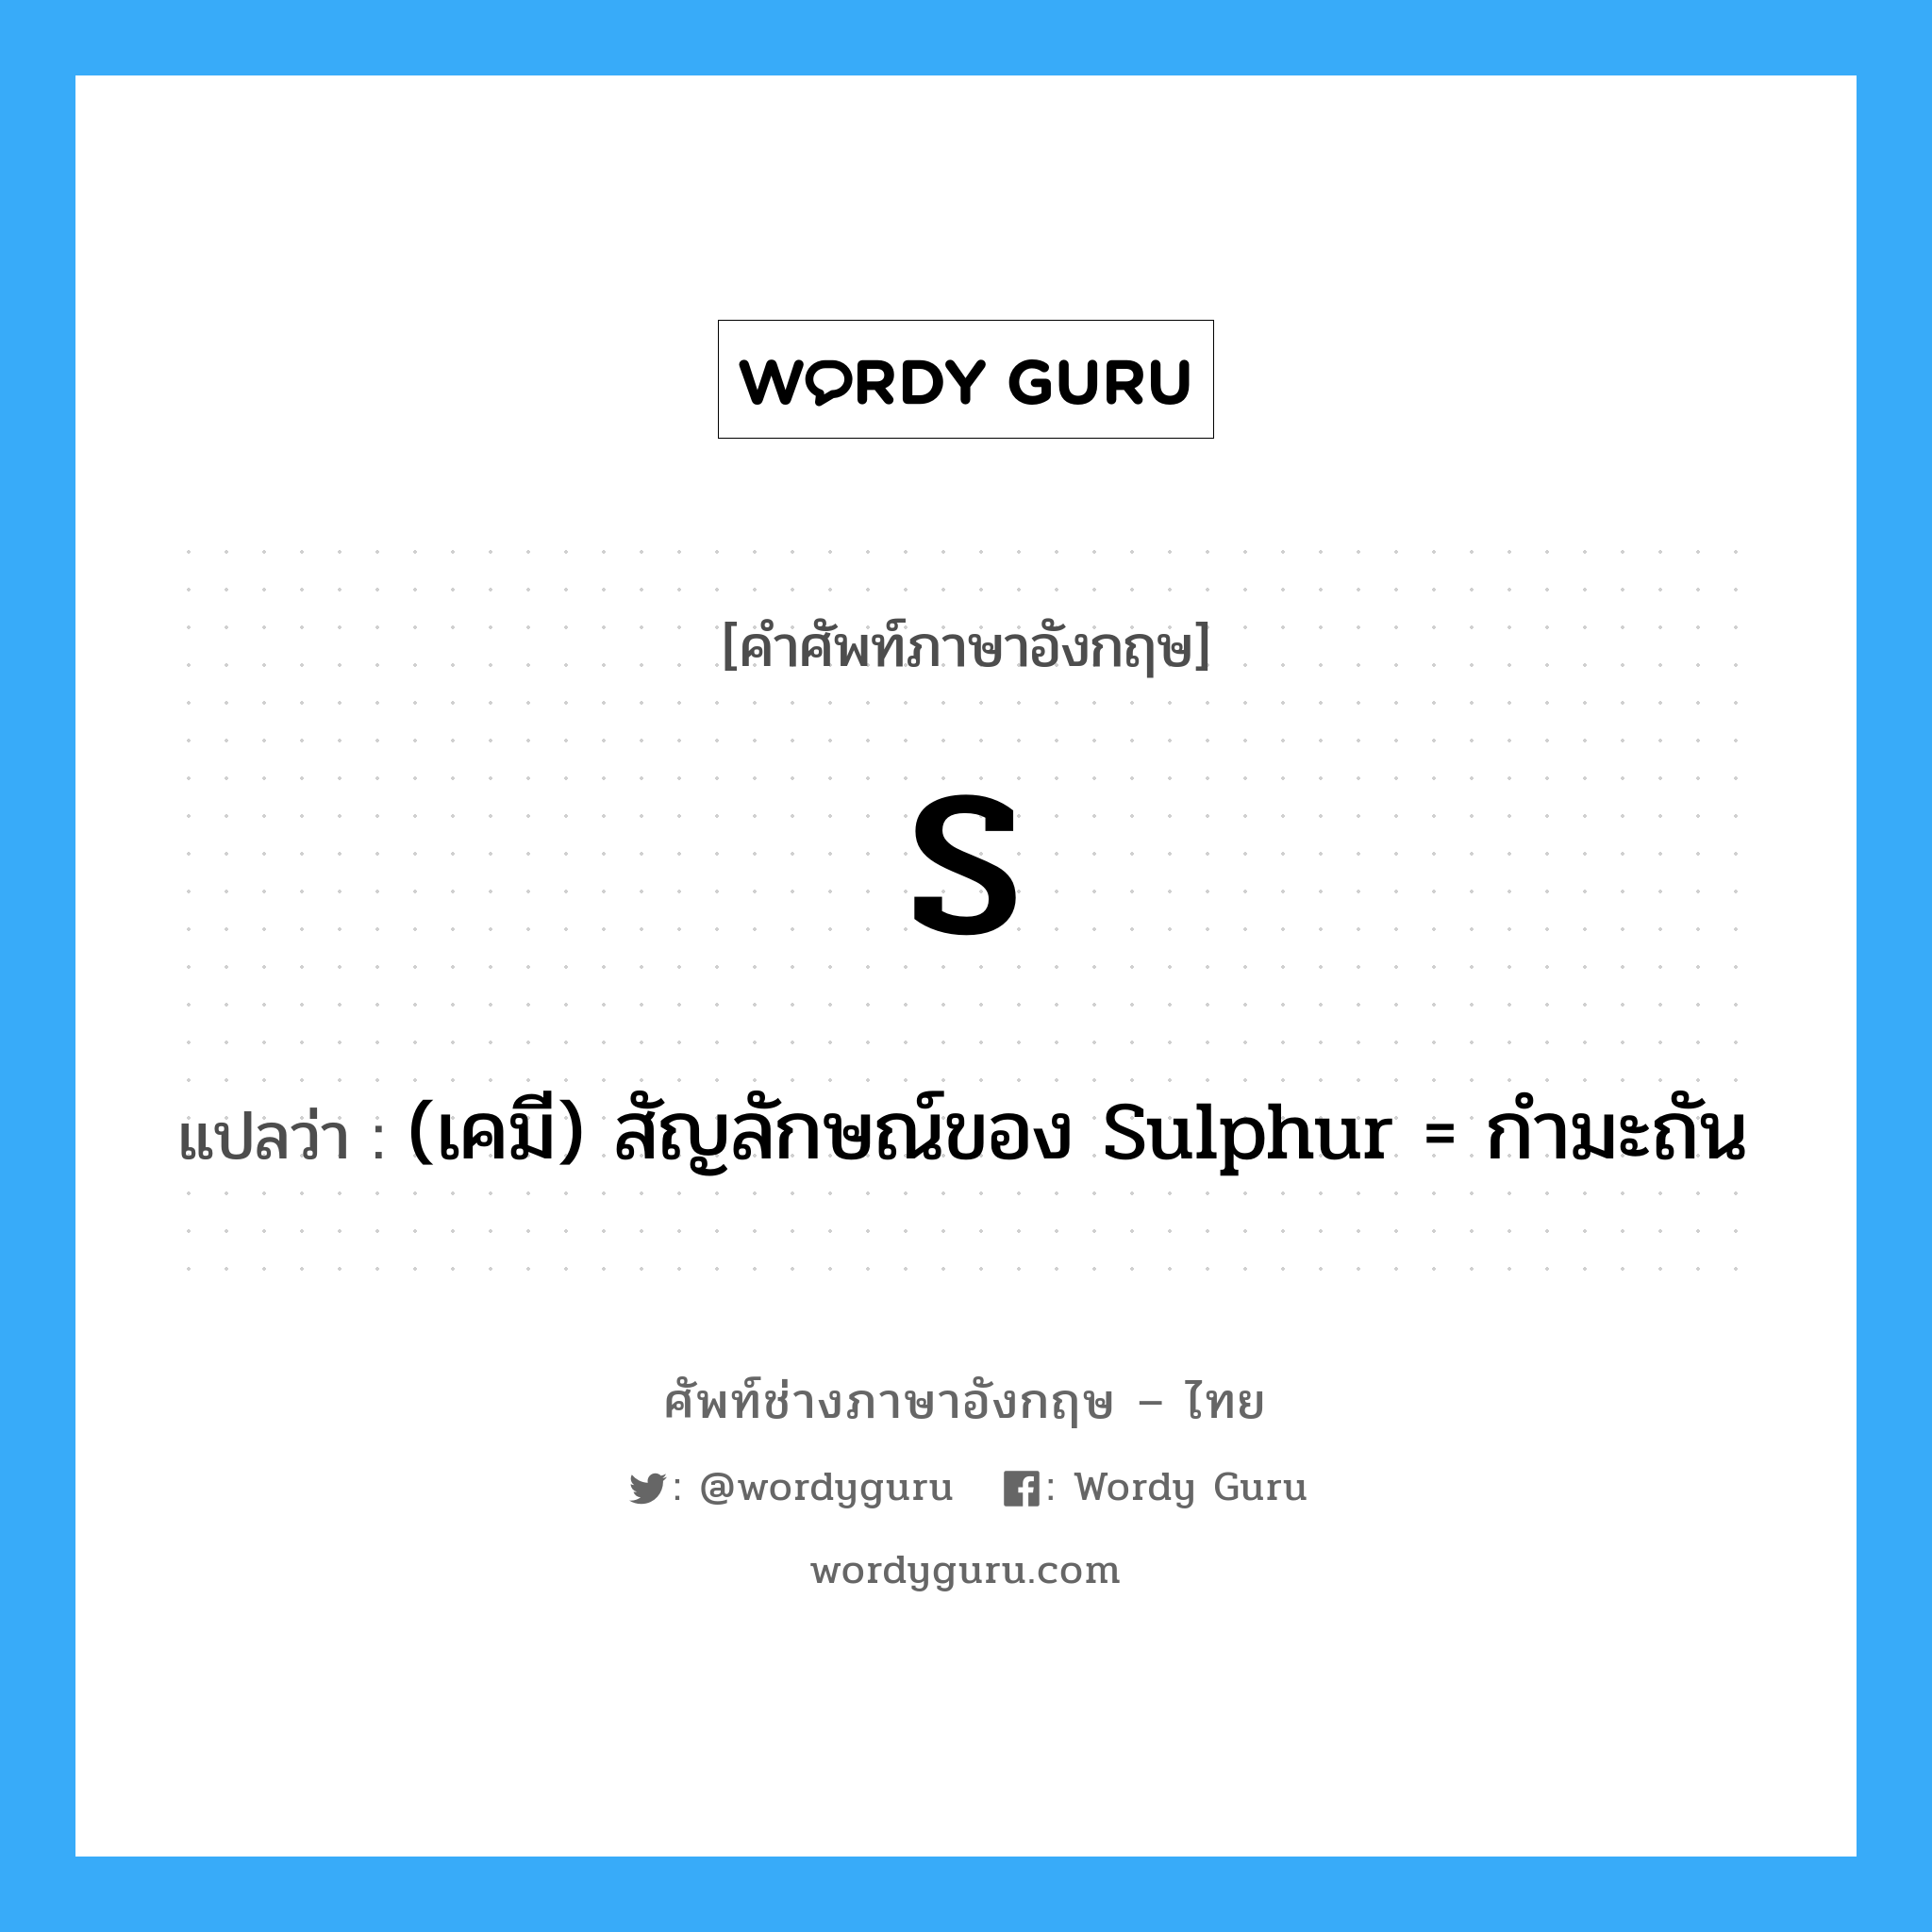 (เคมี) สัญลักษณ์ของ Sulphur = กำมะถัน ภาษาอังกฤษ?, คำศัพท์ช่างภาษาอังกฤษ - ไทย (เคมี) สัญลักษณ์ของ Sulphur = กำมะถัน คำศัพท์ภาษาอังกฤษ (เคมี) สัญลักษณ์ของ Sulphur = กำมะถัน แปลว่า S